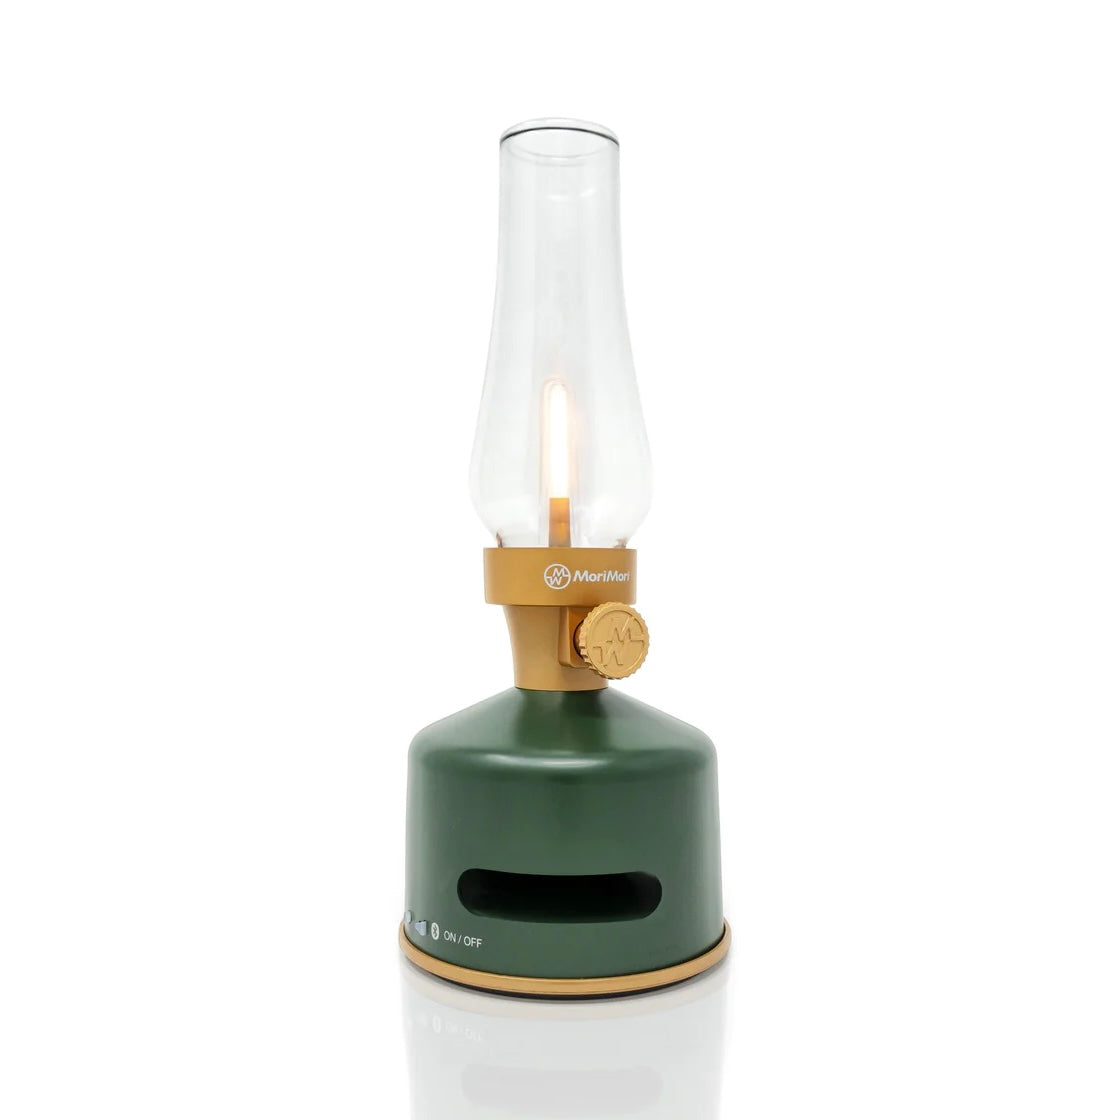 Mori Mori LED Lantern with Speaker, Original Green